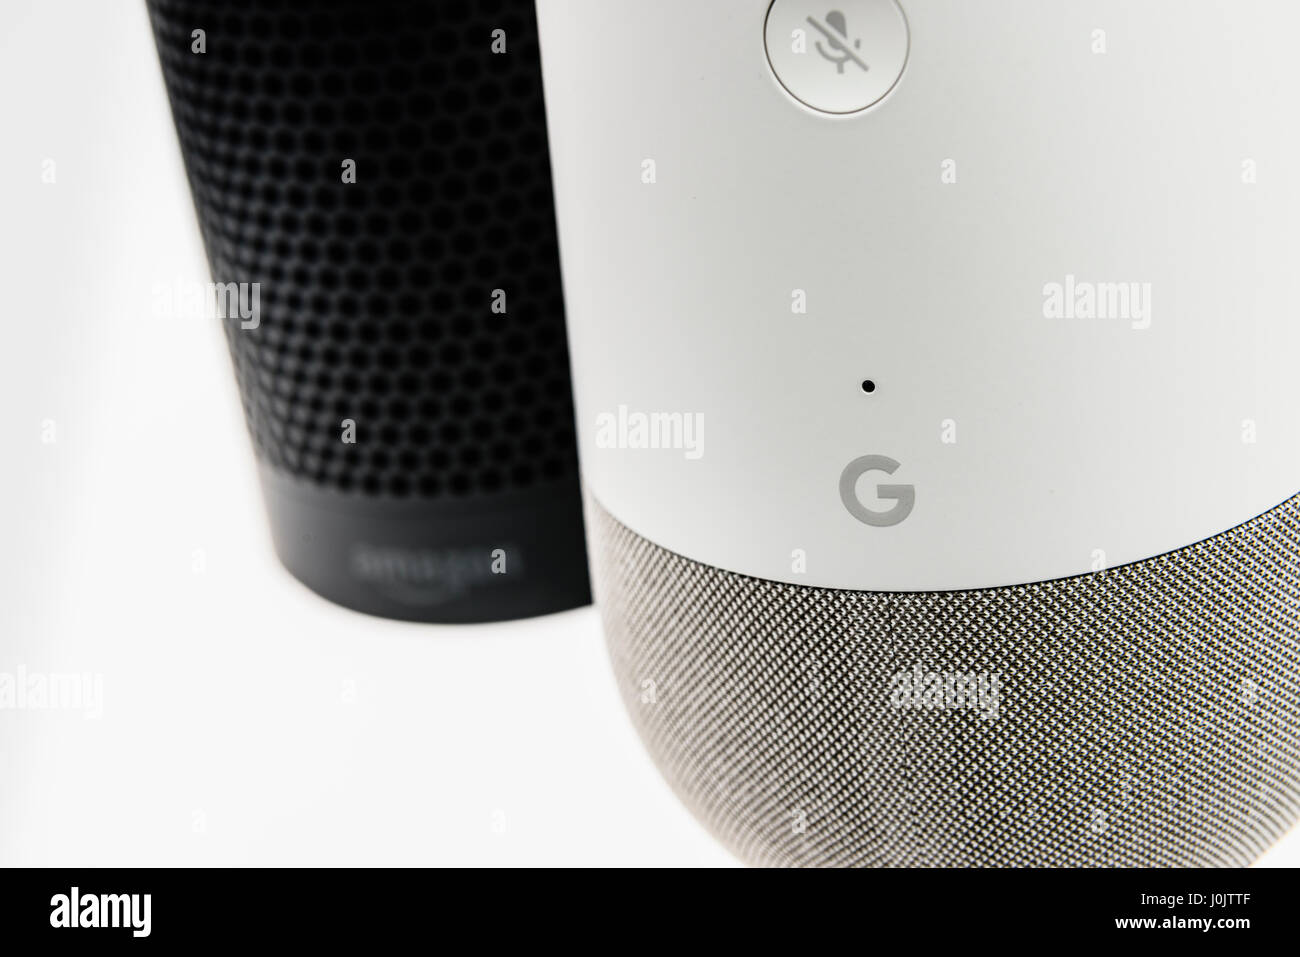 Home page di Google e Amazon eco altoparlanti smart. Entrambi offrono la funzione vocale attivata assistenti personali, riproduzione di musica e di home automation control. Foto Stock